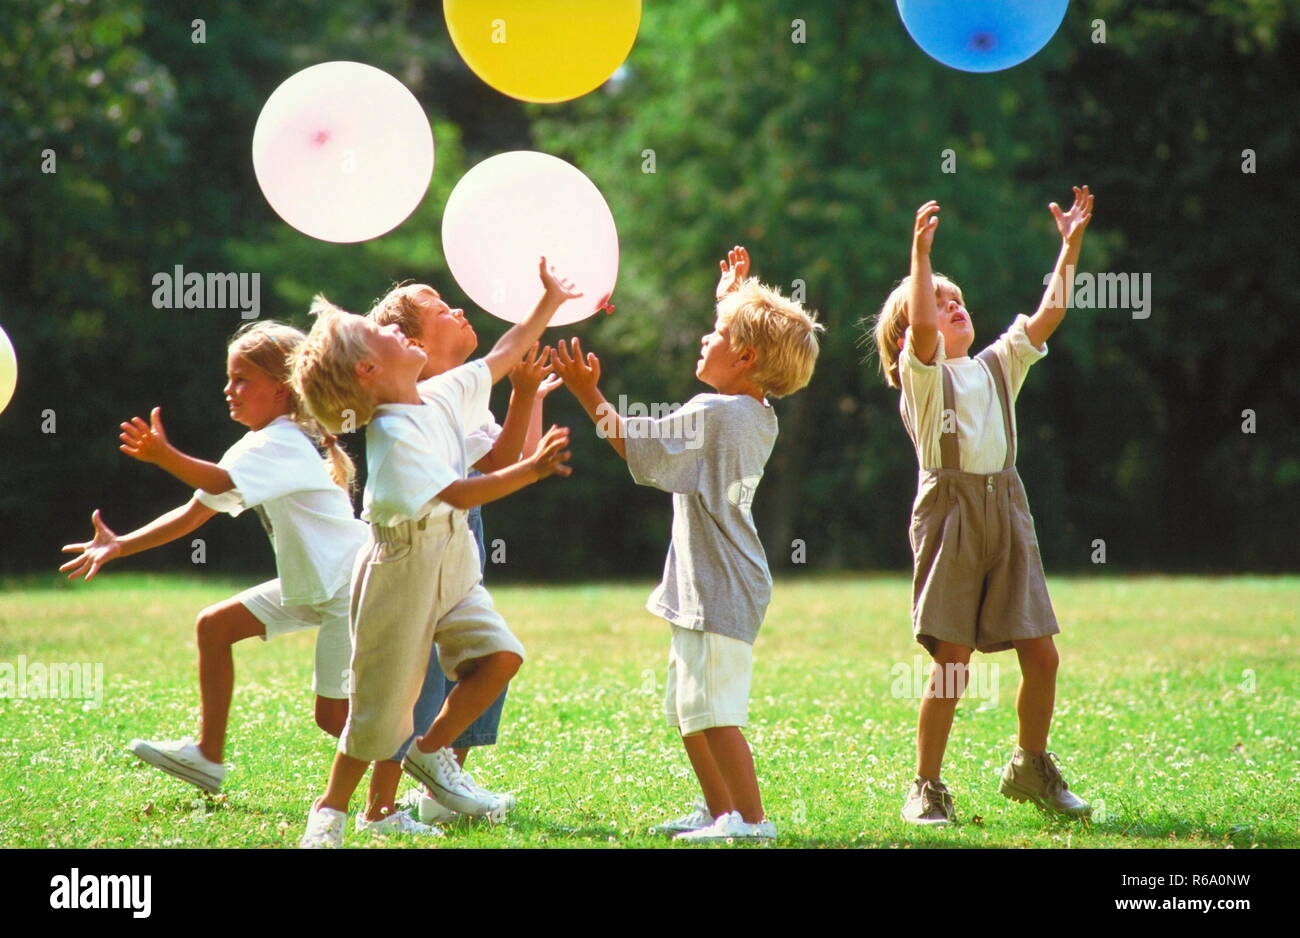 5 Kinder spielen auf einer mit Gaensebluemchen uebersaeaten Wiese im Park  mit bunten Luftballons Stock Photo - Alamy